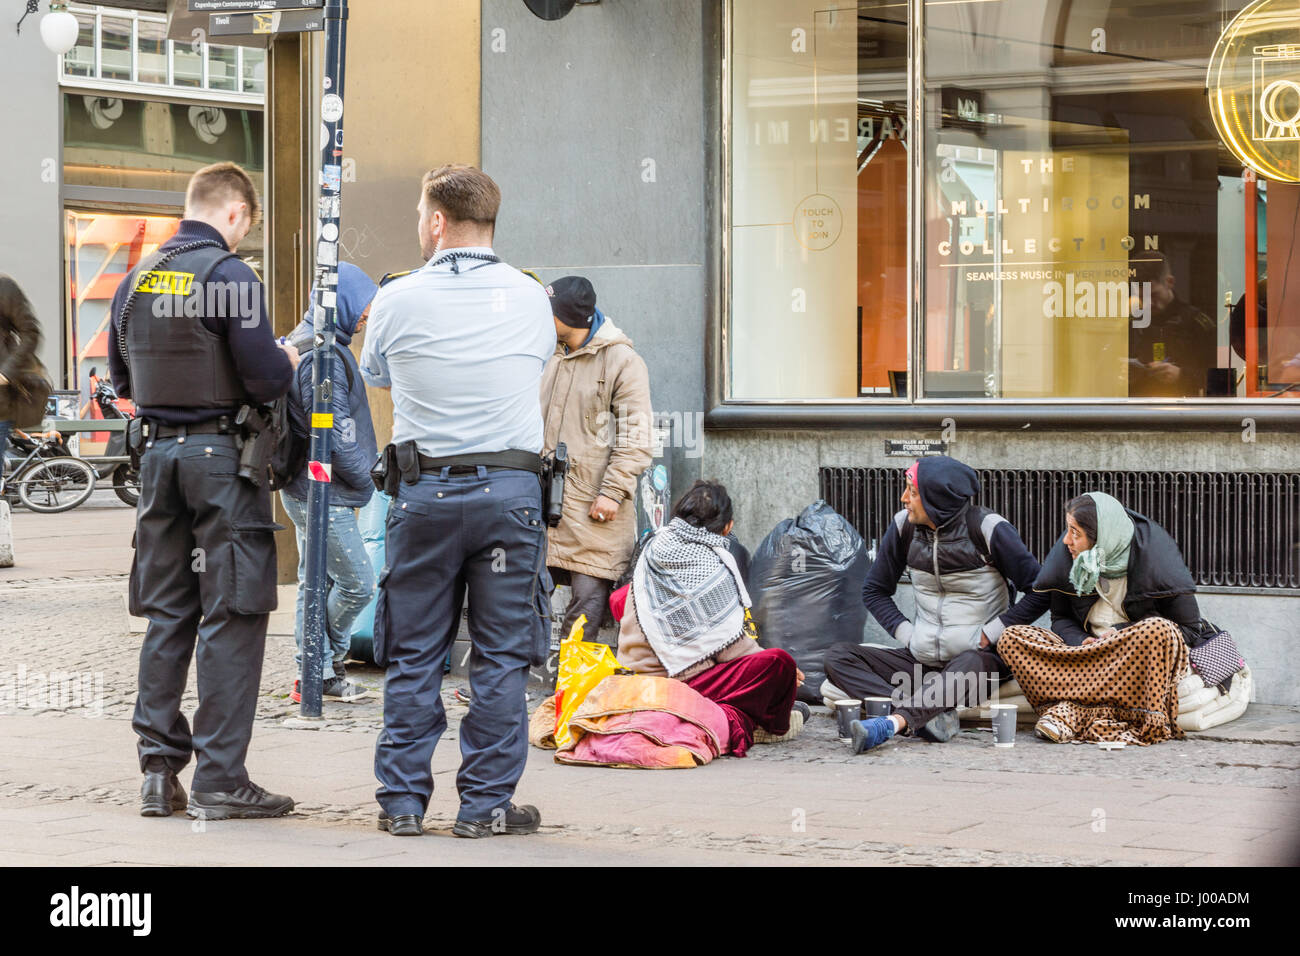 Dos policías al examinar los documentos de algunos inmigrantes, que están sentados en la calle. Copenhague, Dinamarca - 06 de abril de 2017 Foto de stock